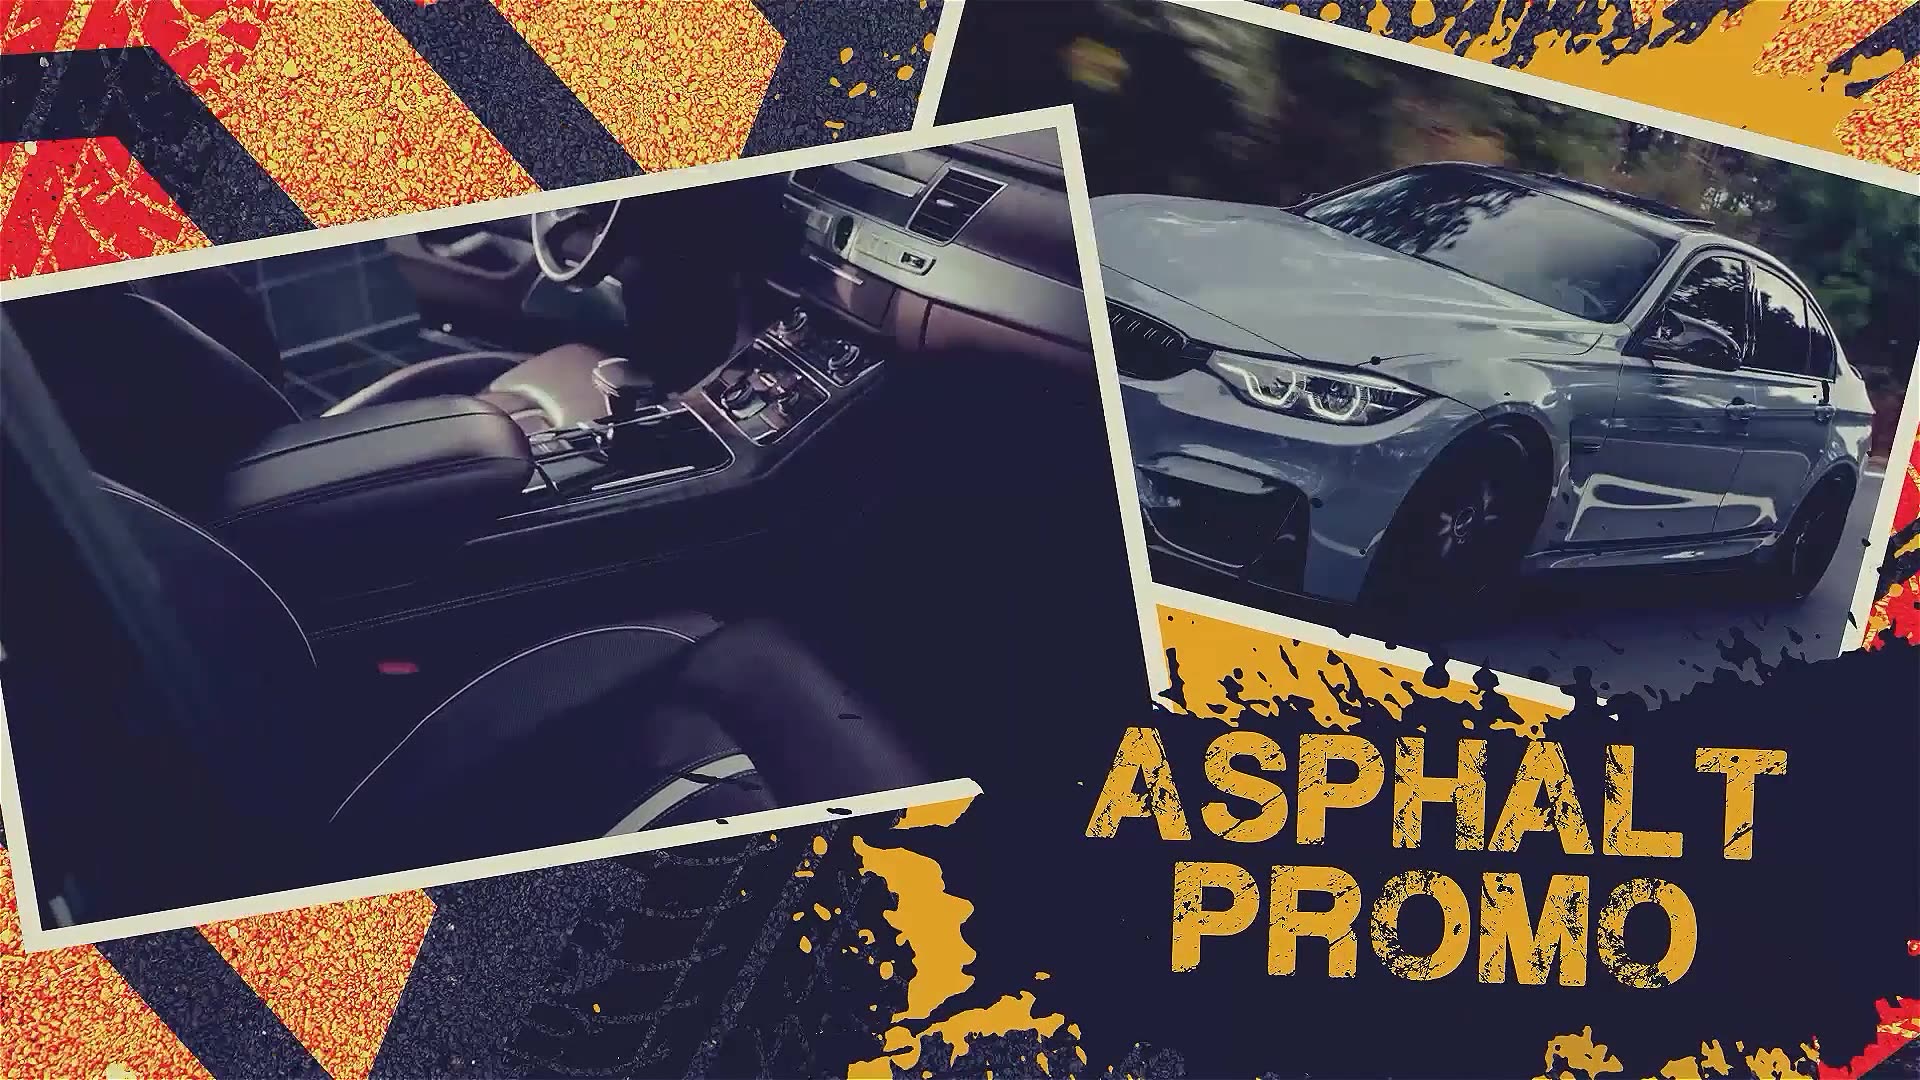 Car Asphalt Promo Videohive 38668546 Premiere Pro Image 4